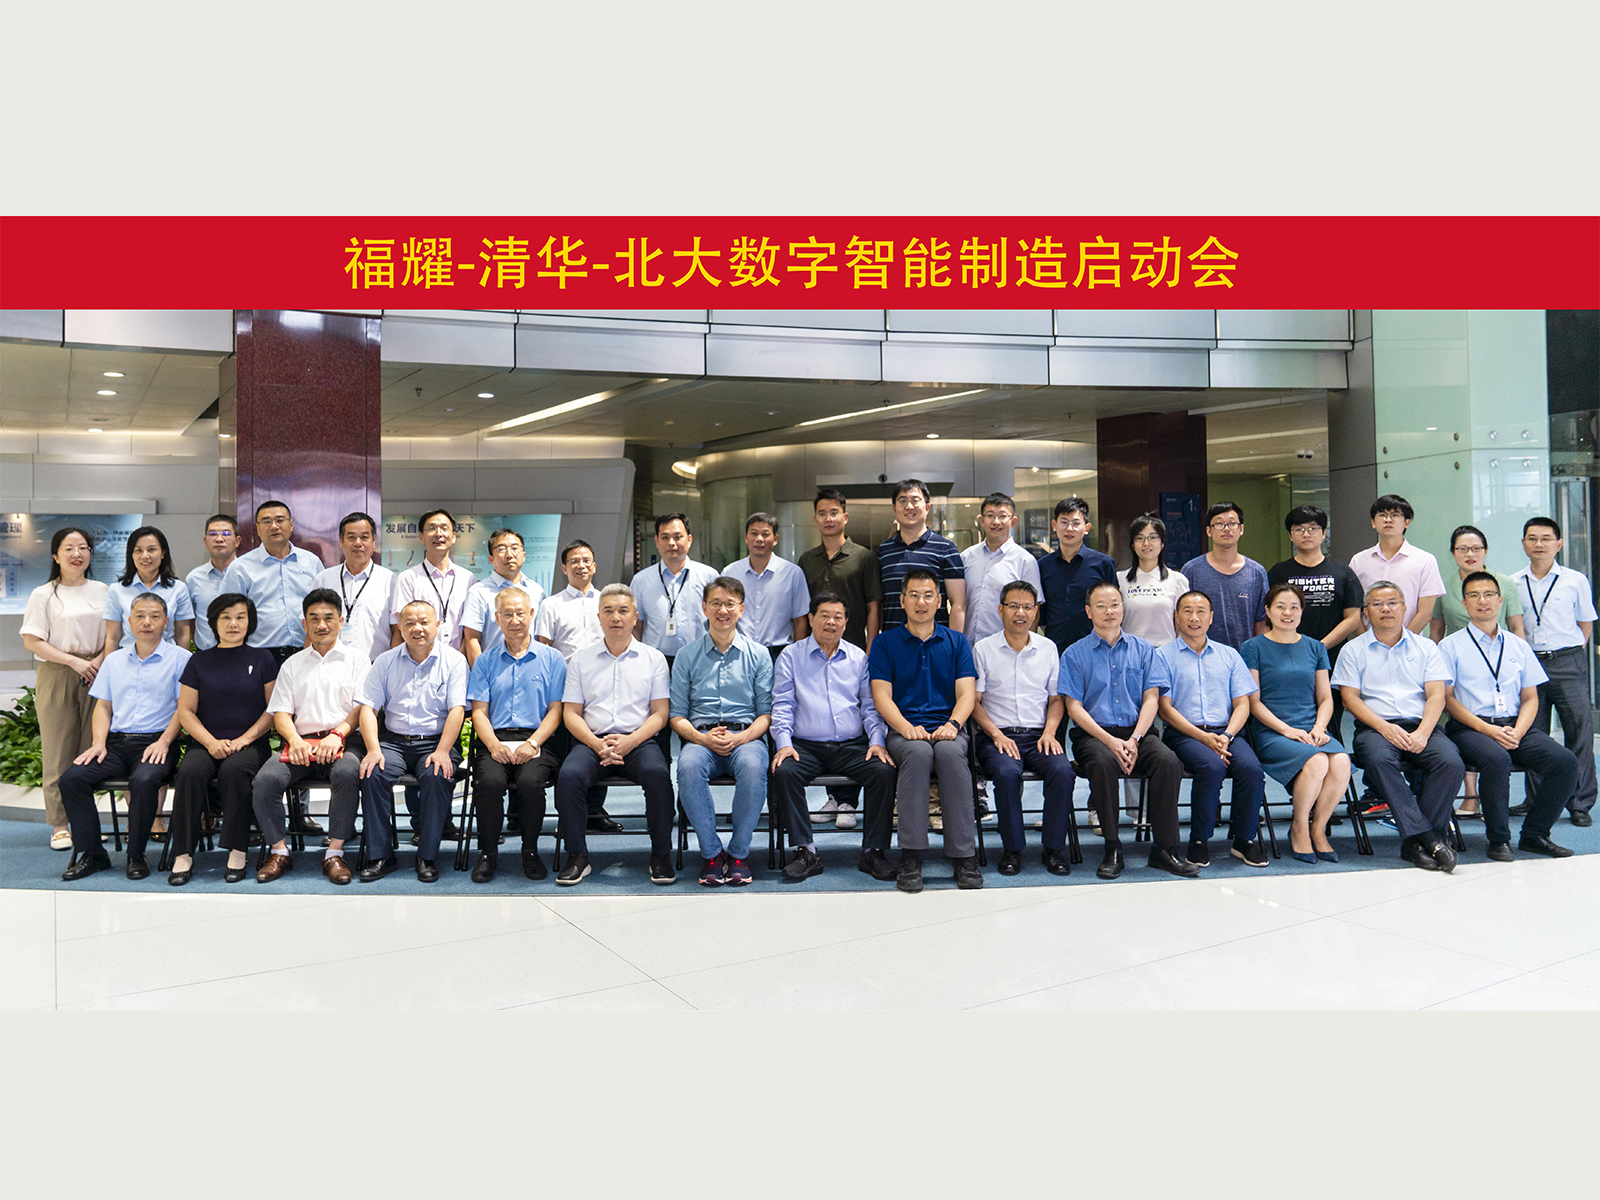 尊龙凯时与清华大学、北京大学组建联合团队，启动数字智能制造立异项目